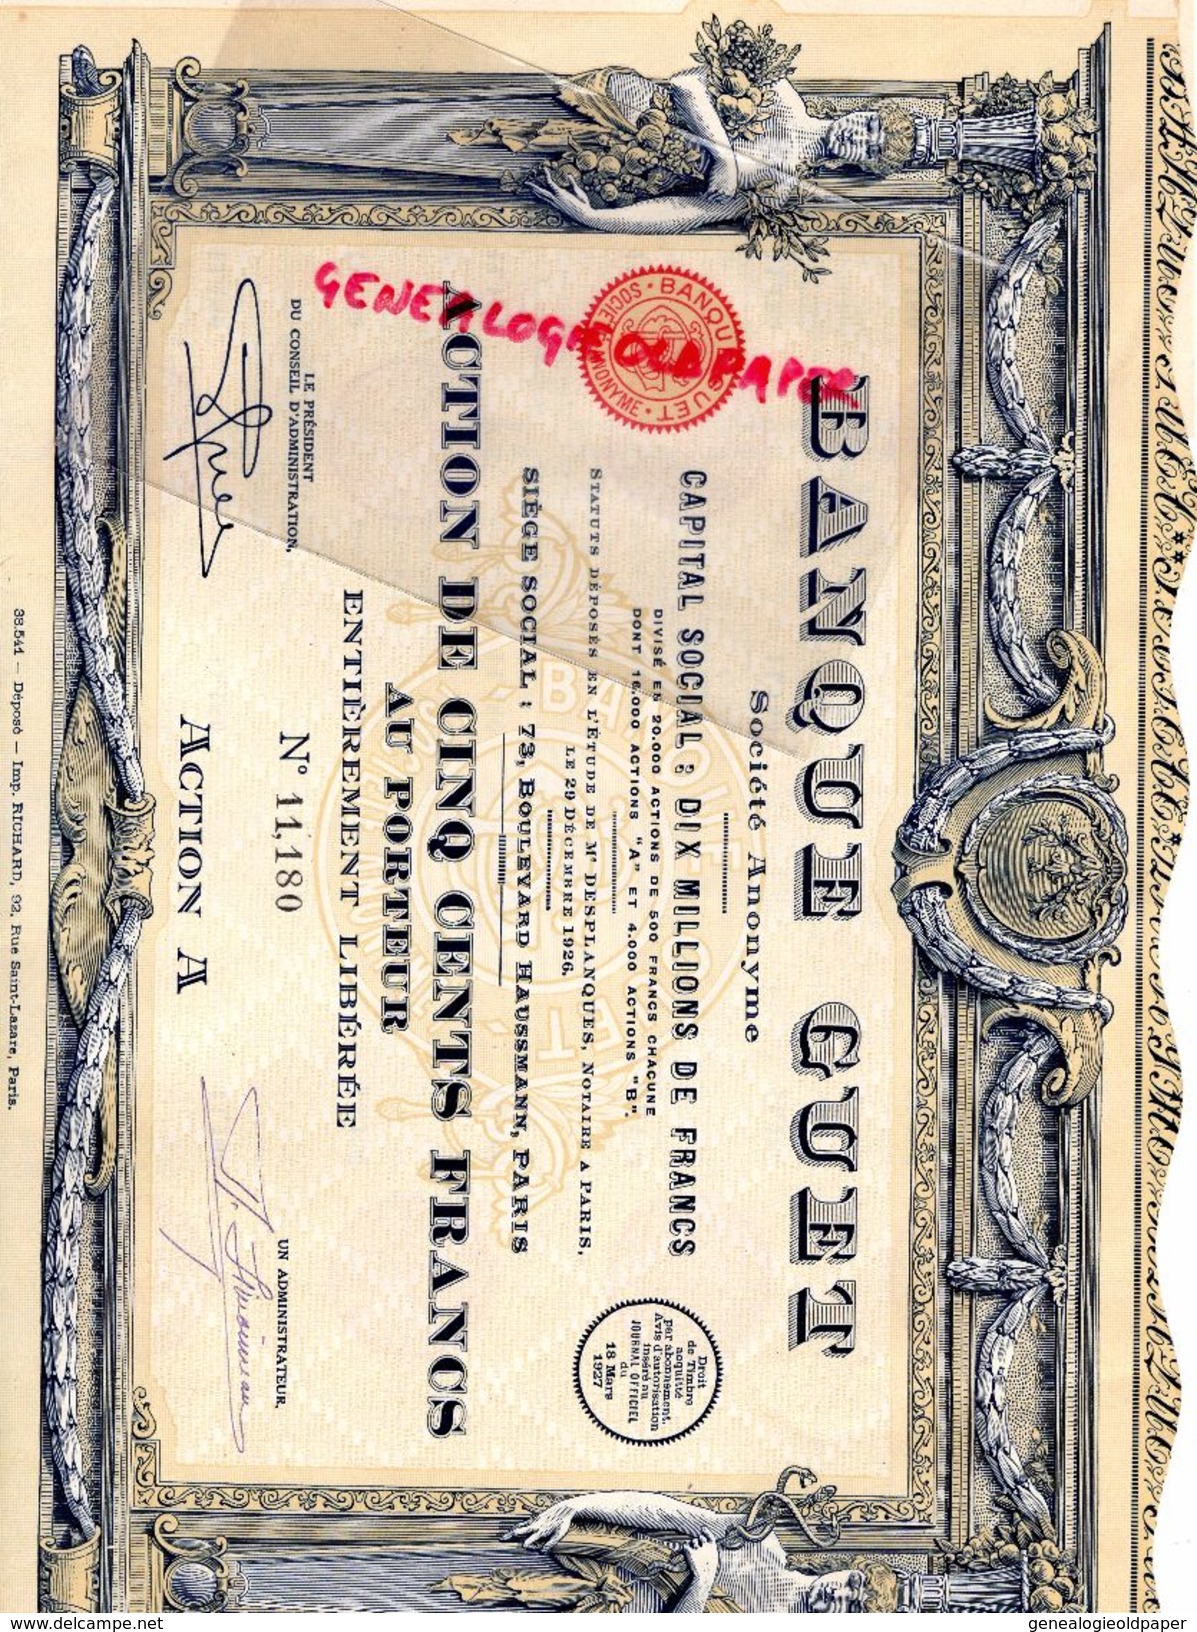 75 - PARIS- BANQUE GUET -ACTION 500 FRANCS- 1926- 73 BD HAUSSMANN- MAITRE DESPLANQUES NOTAIRE -IMPRIMERIE RICHARD - Banca & Assicurazione